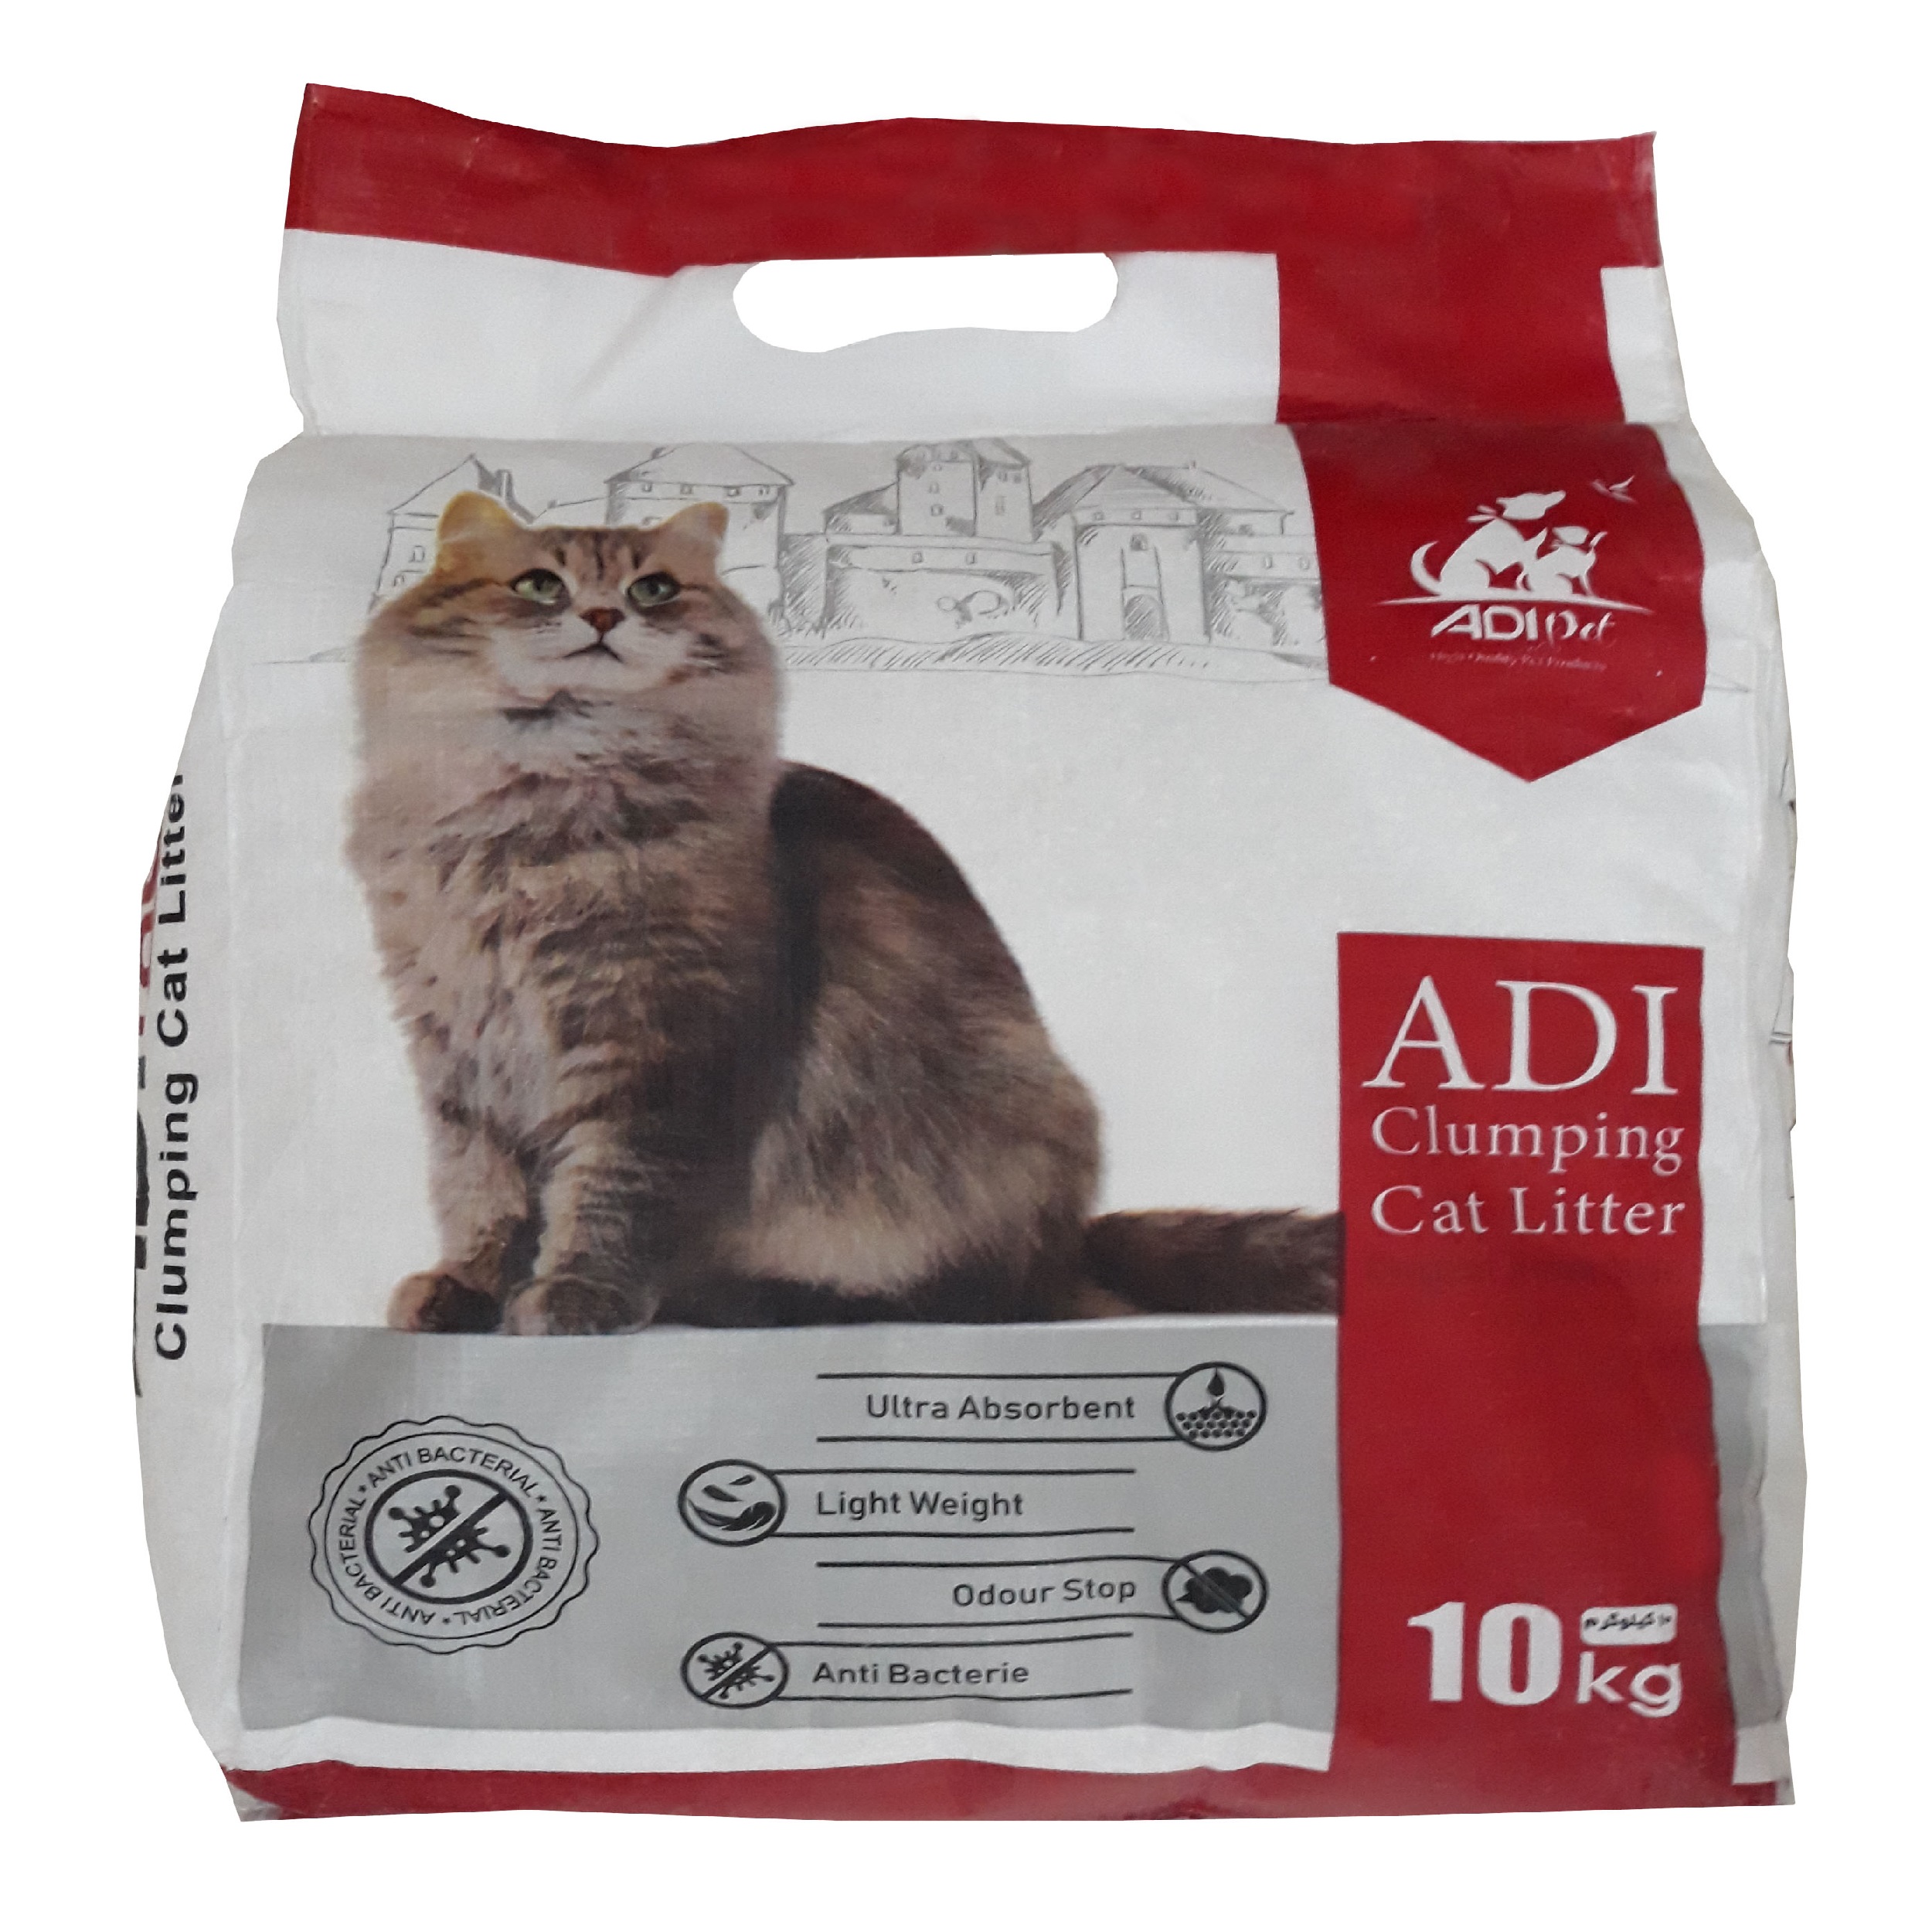 خاک بستر گربه آدی کد 007 وزن 10 کیلوگرم